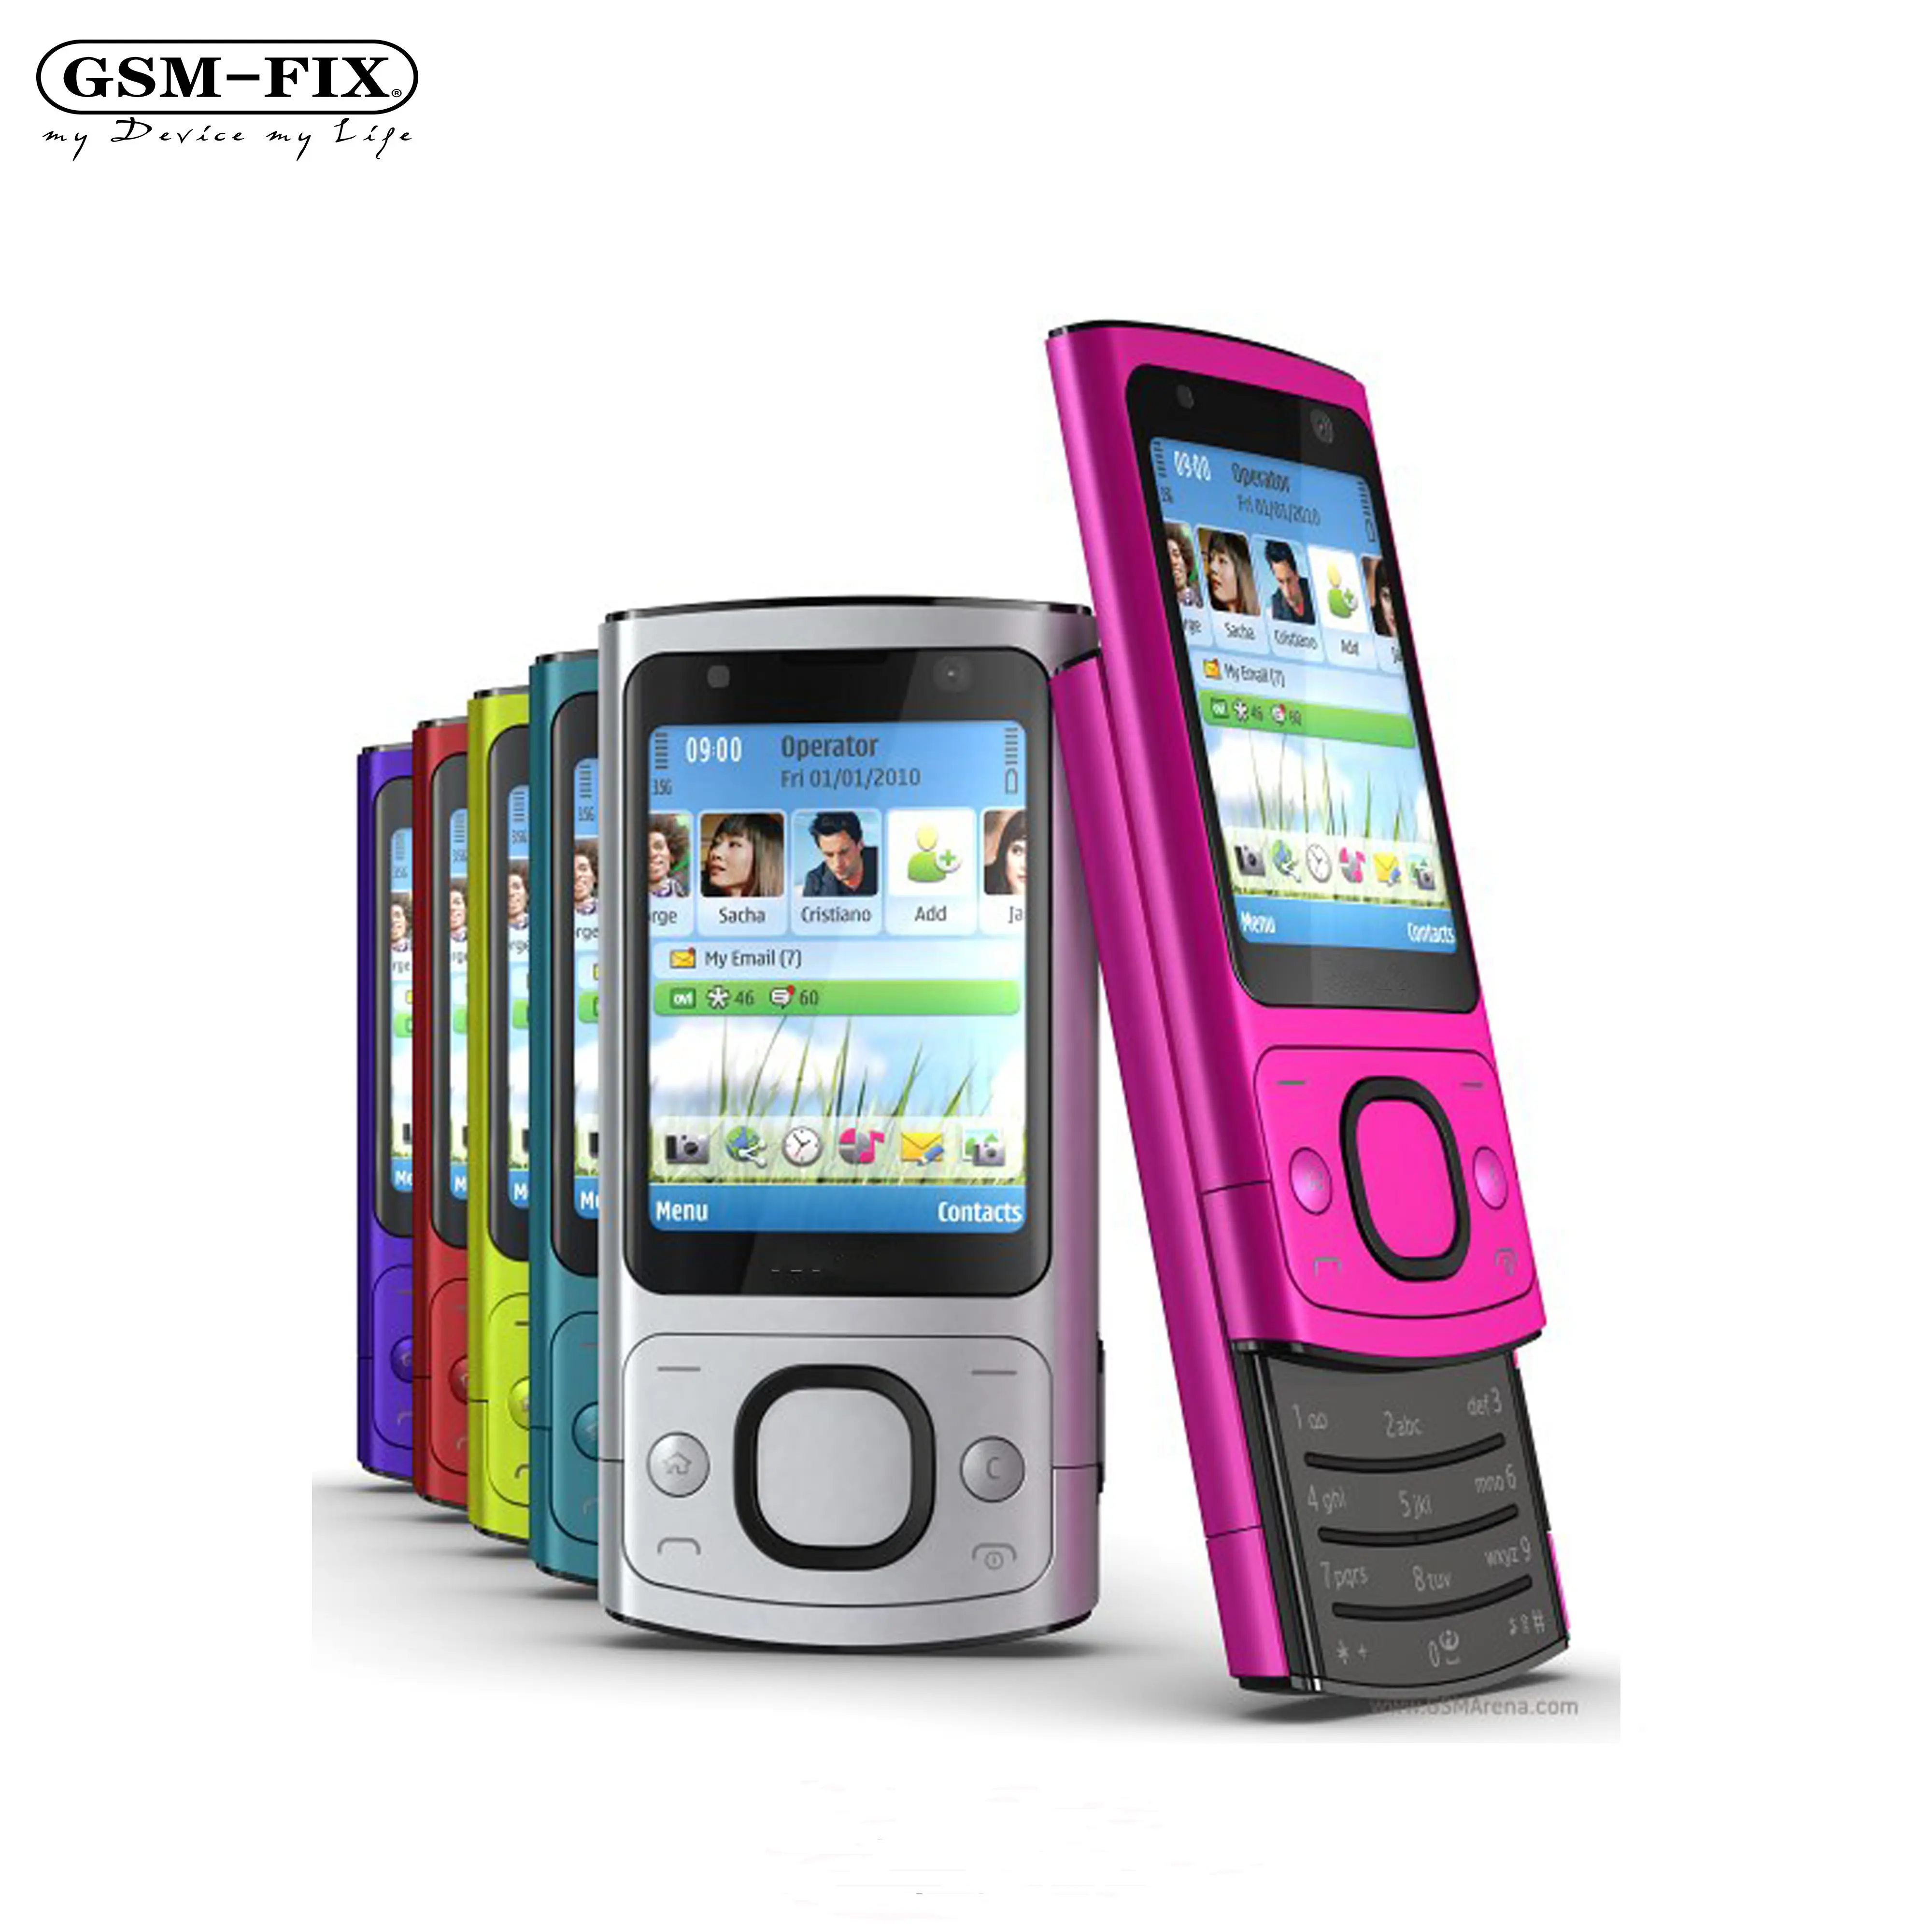 GSM-FIX Original 6700 s für NOKIA Handy-Kamera 5.0MP Bluetooth Java entsperrt 6700 Folie Telefon